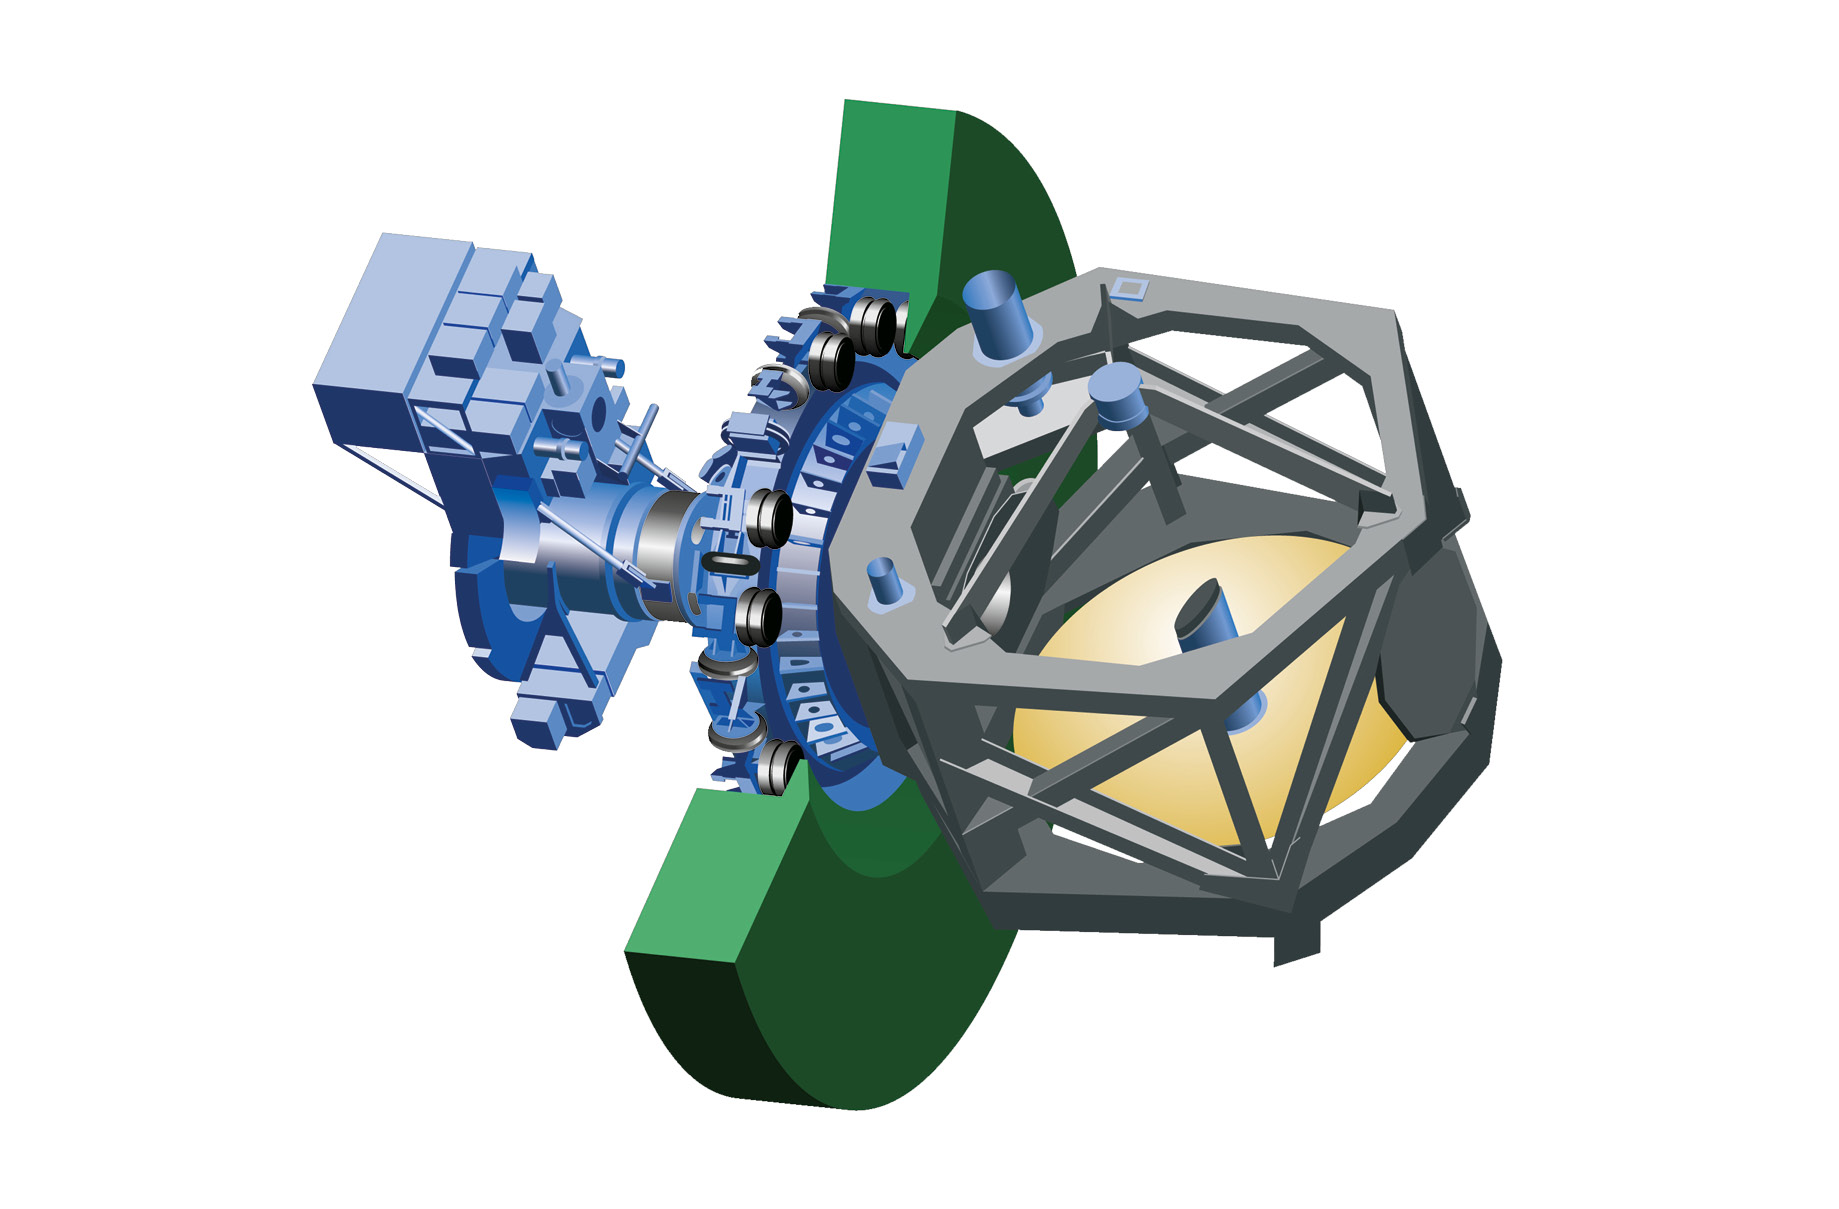 Ein System aus 24 axial und radial ausgerichteten Luftfedern isoliert Vibrationen und hält das 17 Tonnen schwere Infrarotteleskop exakt in Position.